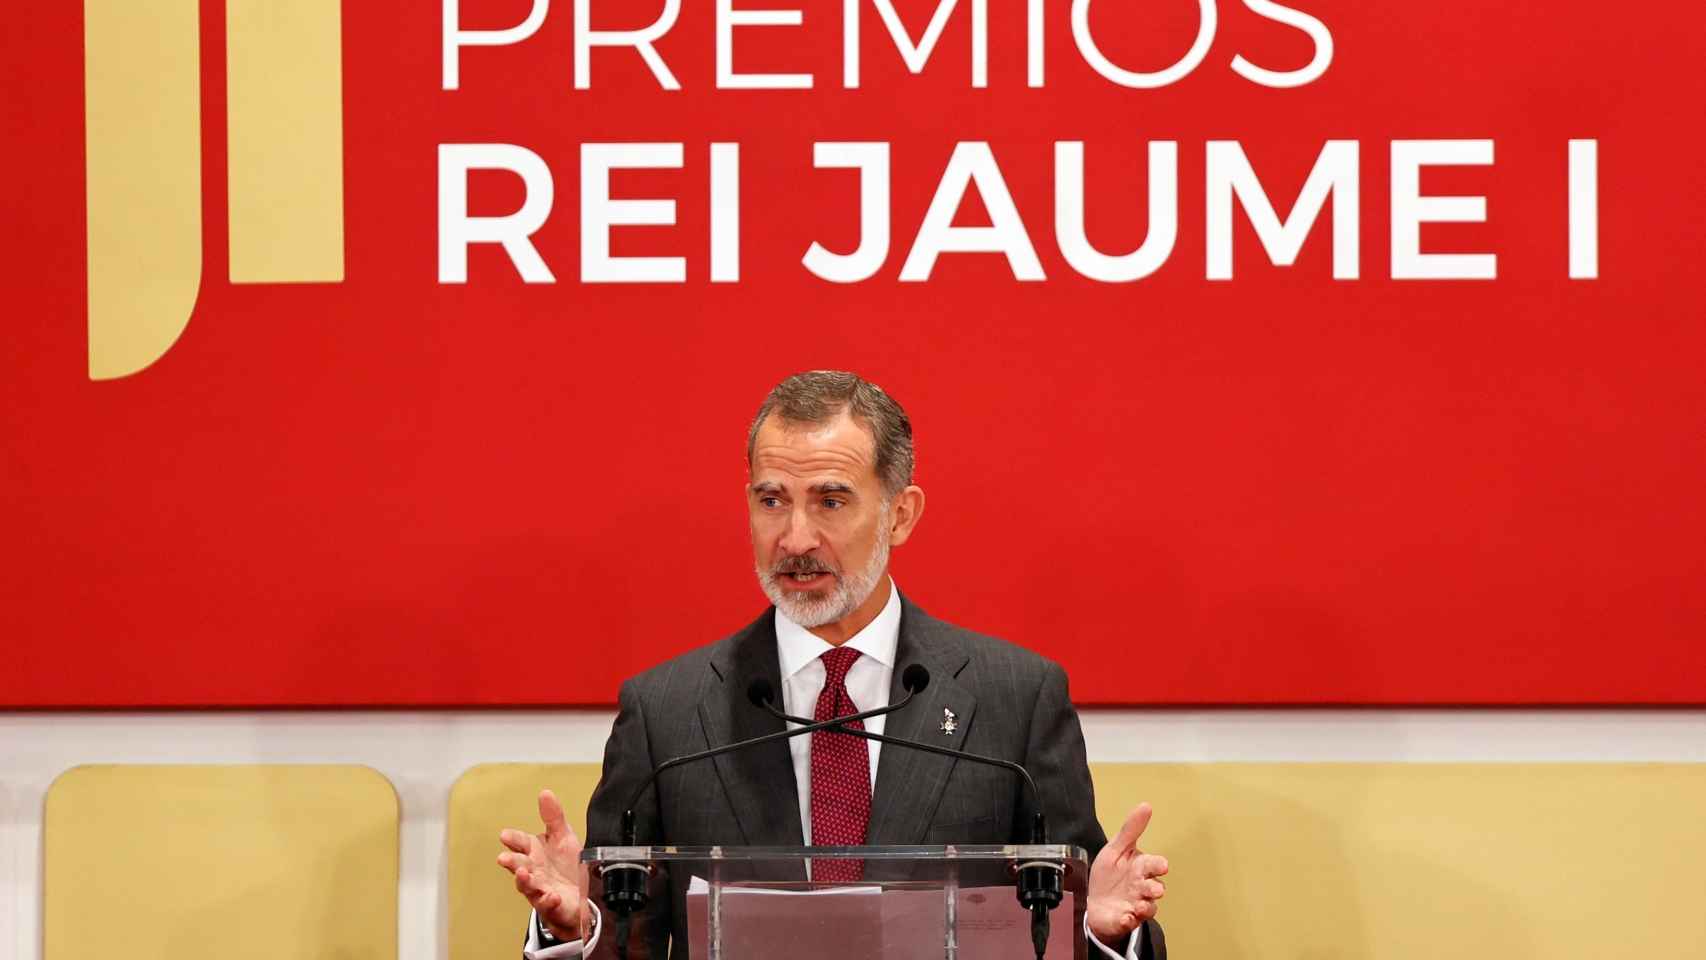 El Rey Felipe VI durante su discurso en los Premios Rey Jaume I.